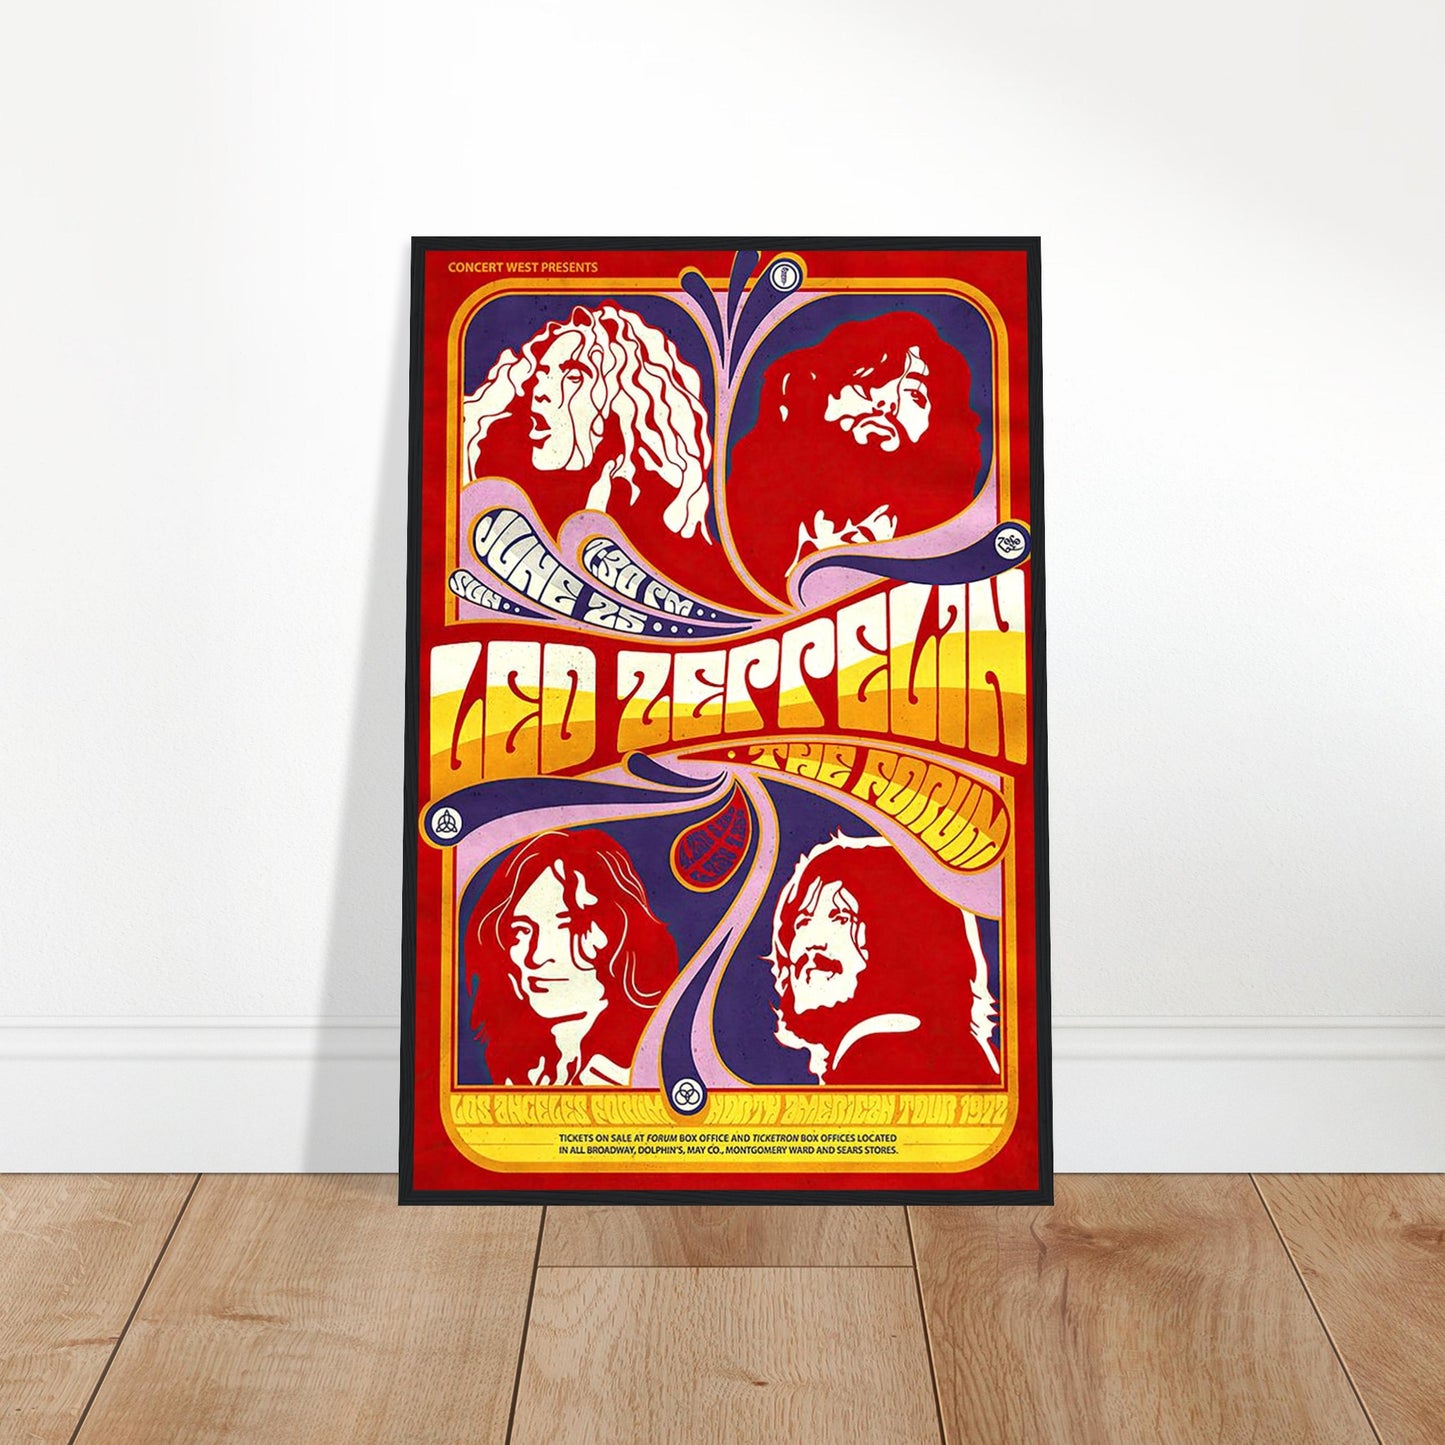 Led Zeppelin Vintage Poster Reprint on Premium Matte Paper - Posterify